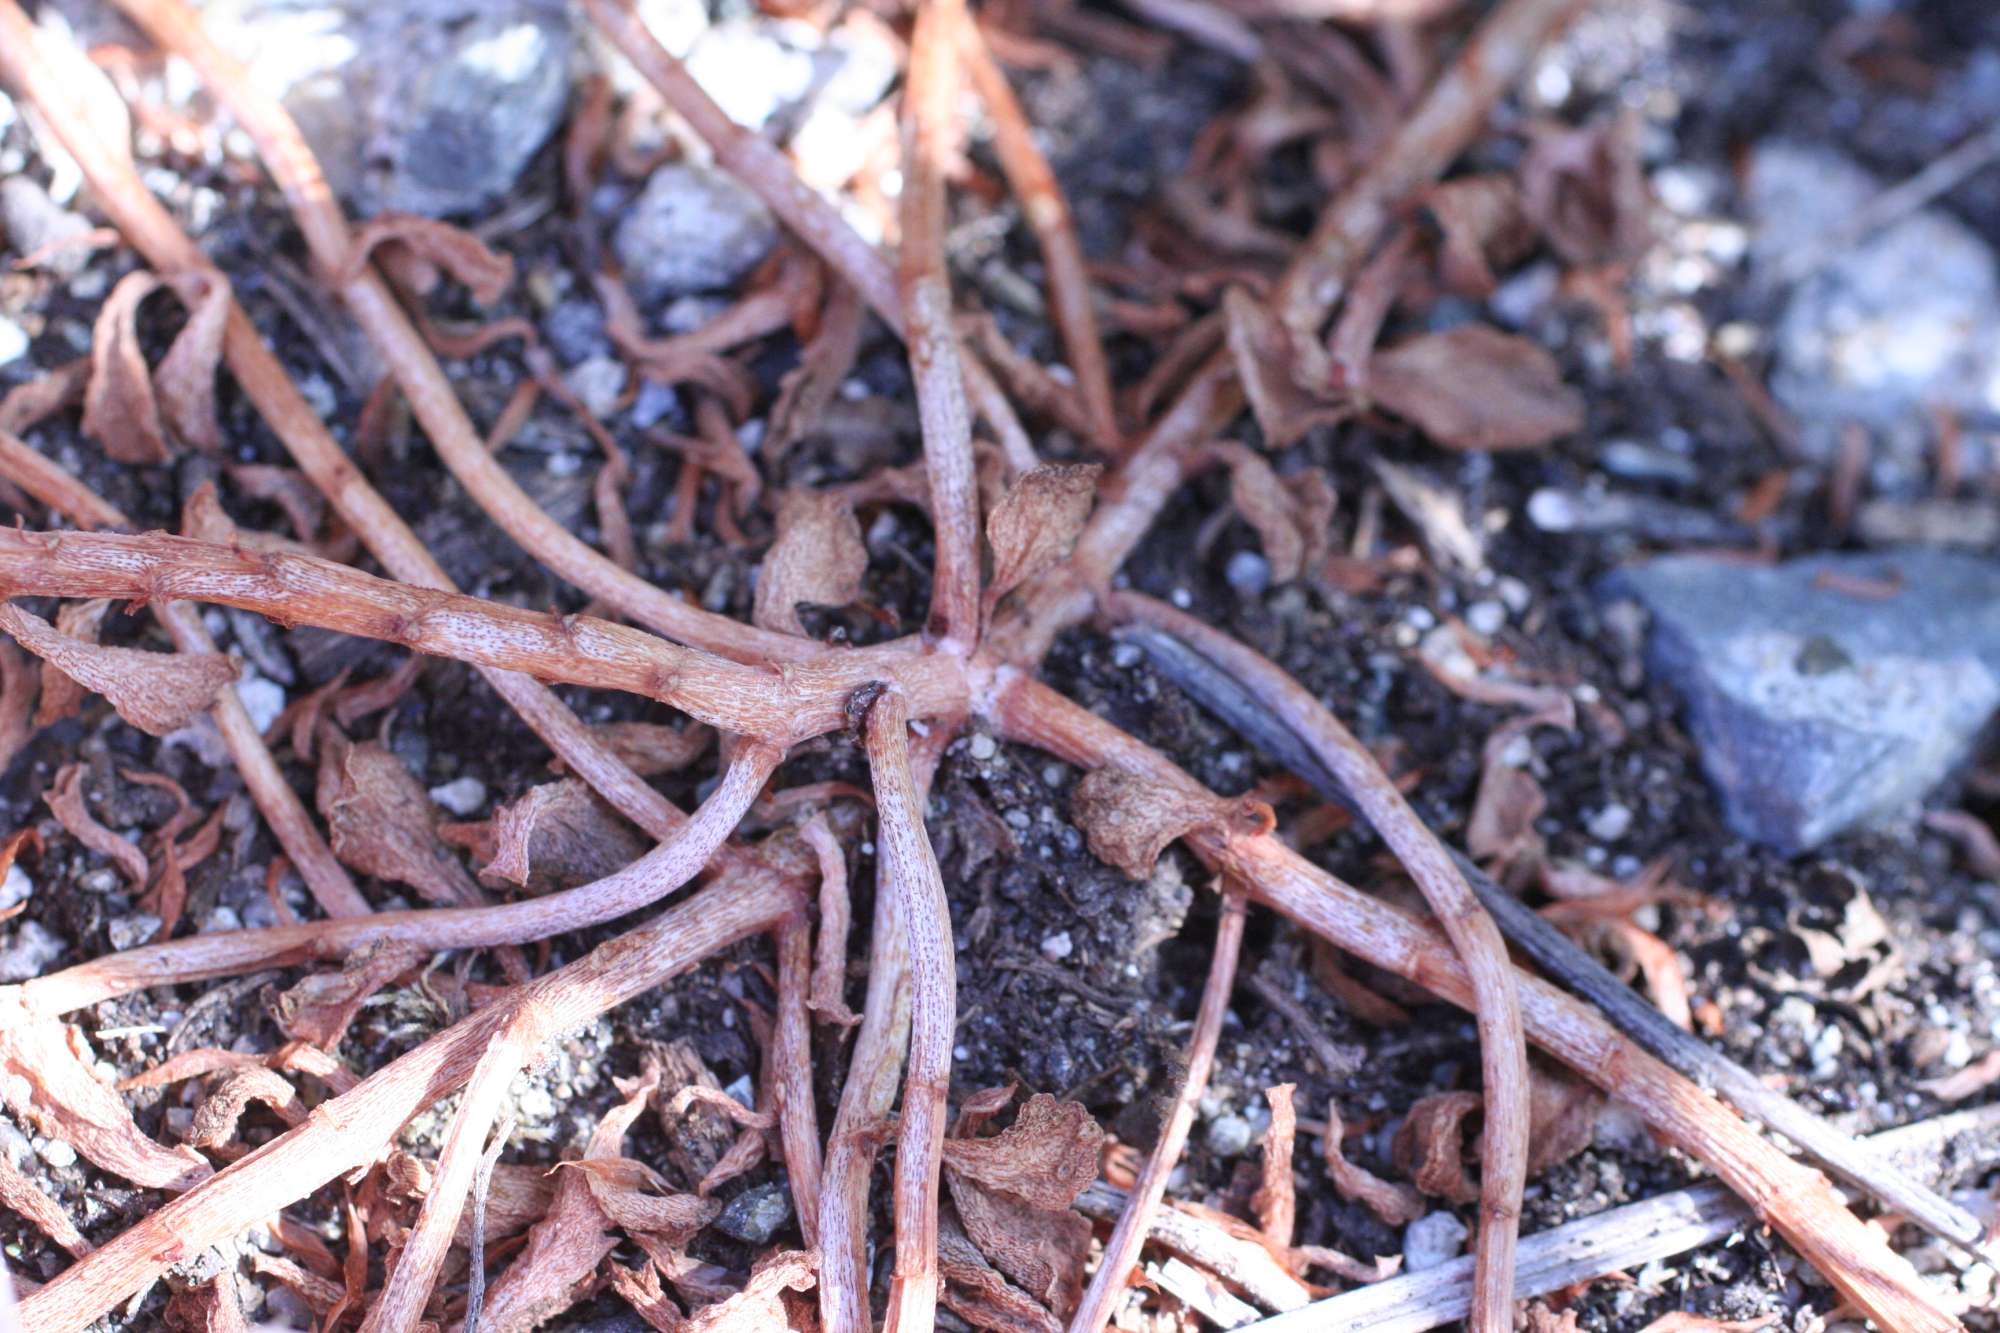 Phedimus stellatus / Borracina spinosa